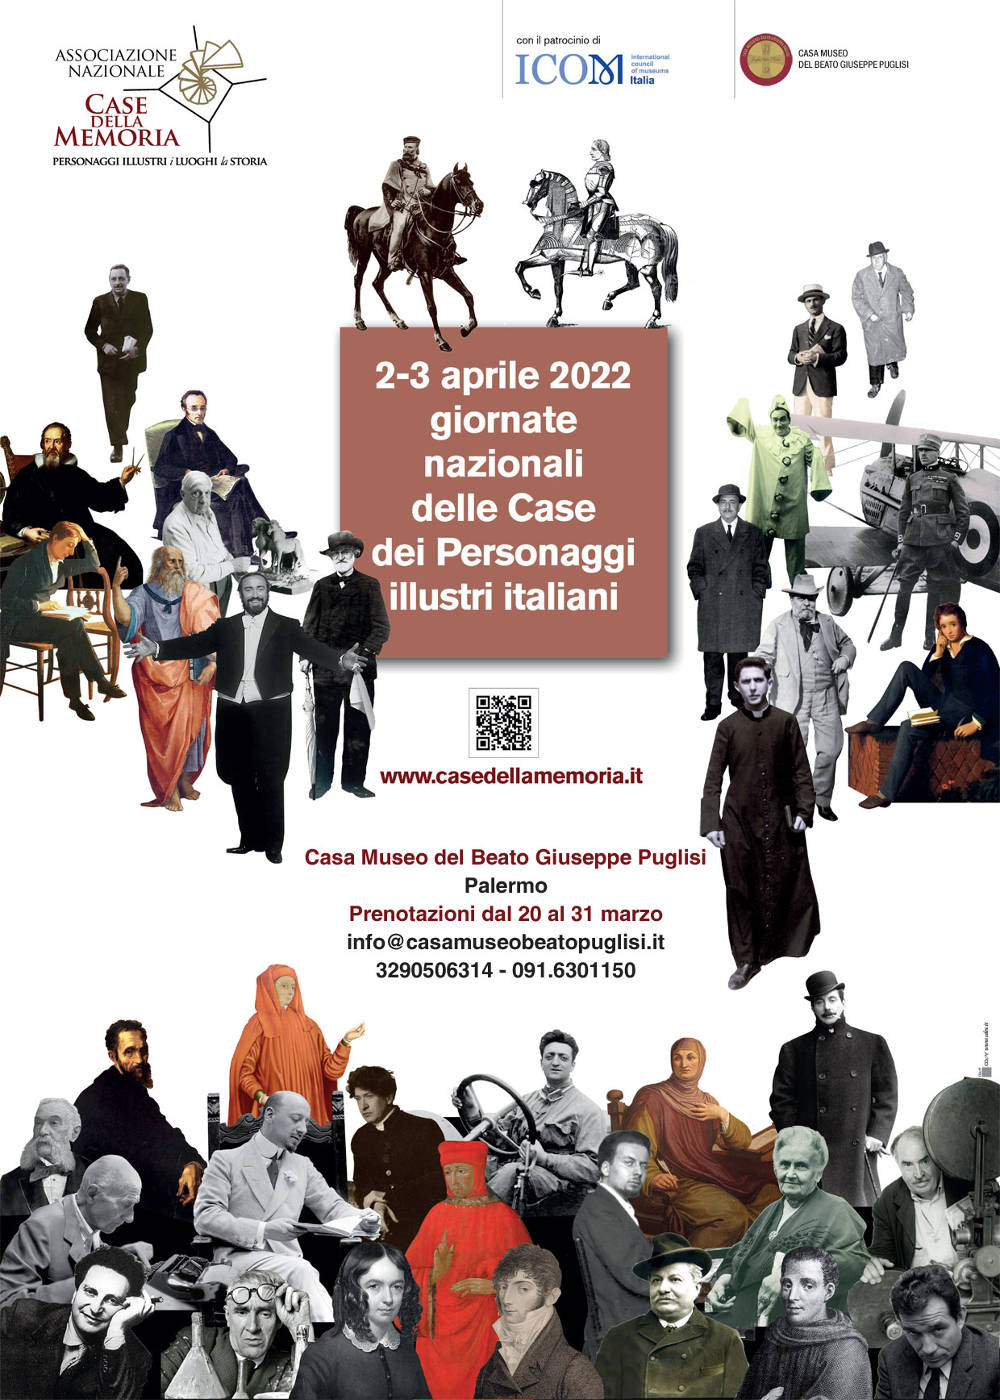 Il 2 e 3 aprile la Casa Museo apre le porte ai visitatori in occasione delle Giornate nazionali delle case dei personaggi illustri italiani